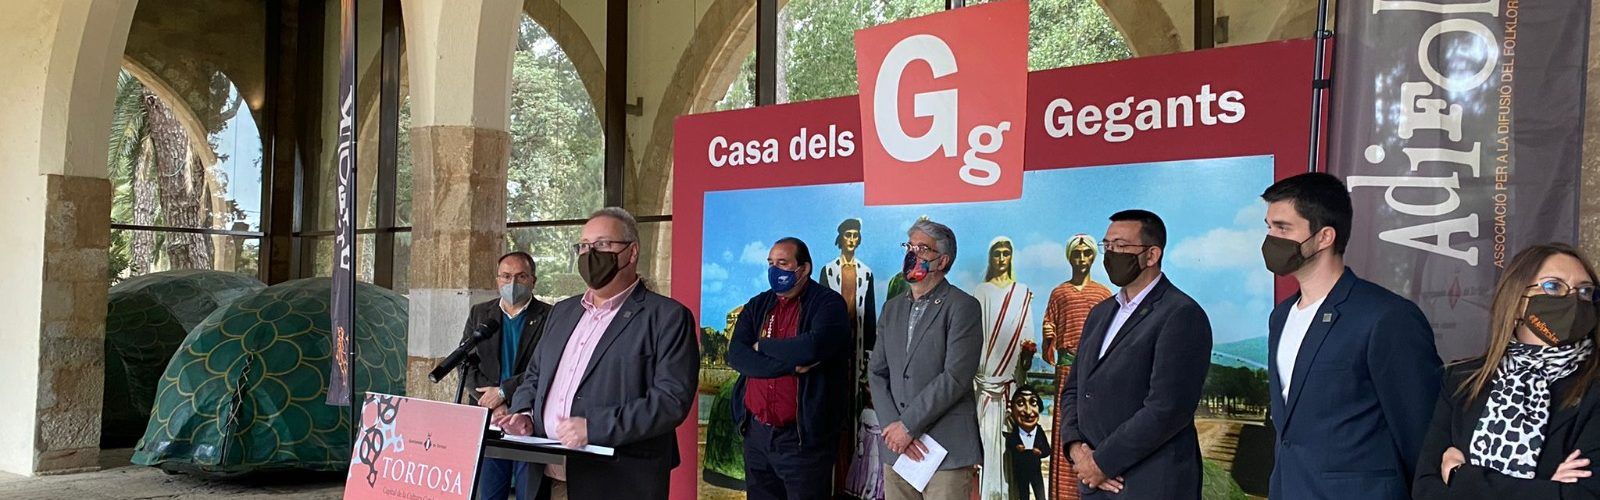 Els nanos i gegants de Vinaròs estaran a L’Alguer, participant en el 33è Aplec Internacional